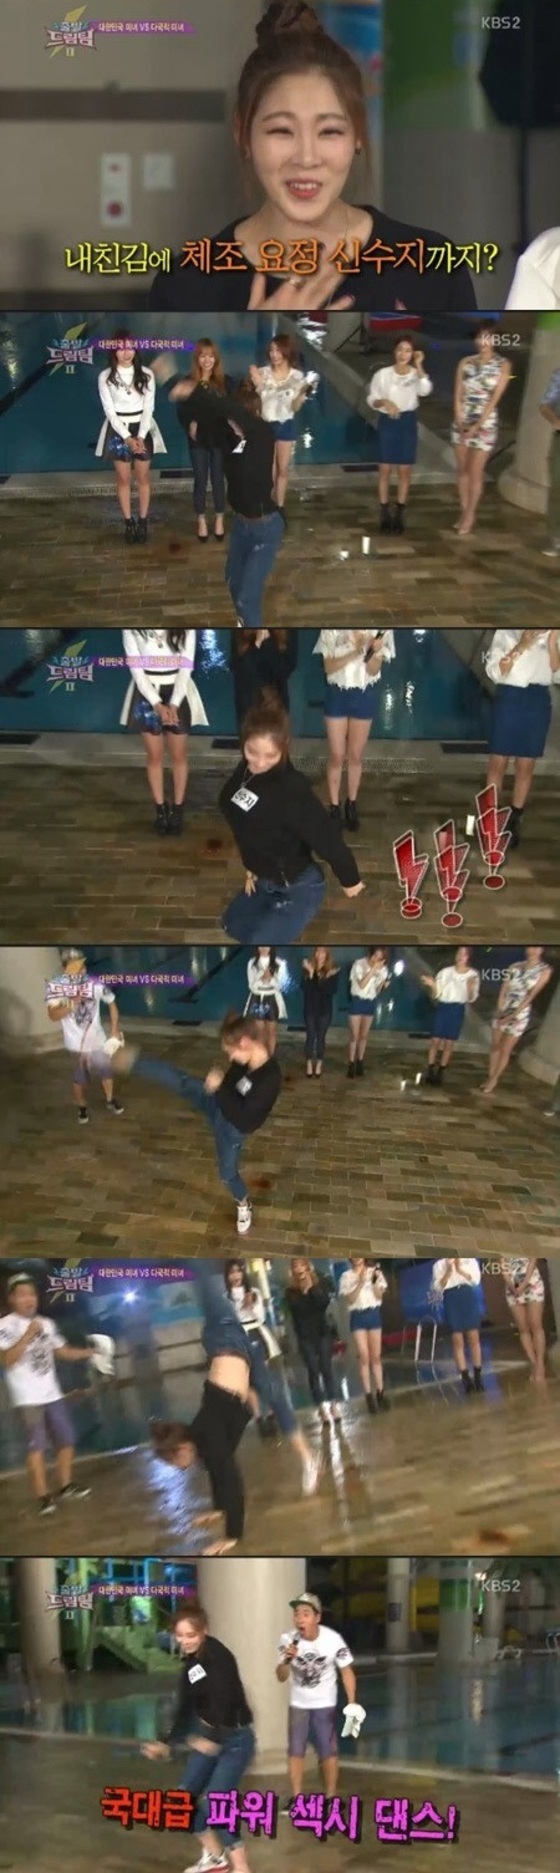 신수지가 걸그룹 못지 않은 댄스를 선보였다. © 뉴스1스포츠 / KBS2 '출발 드림팀' 캡처